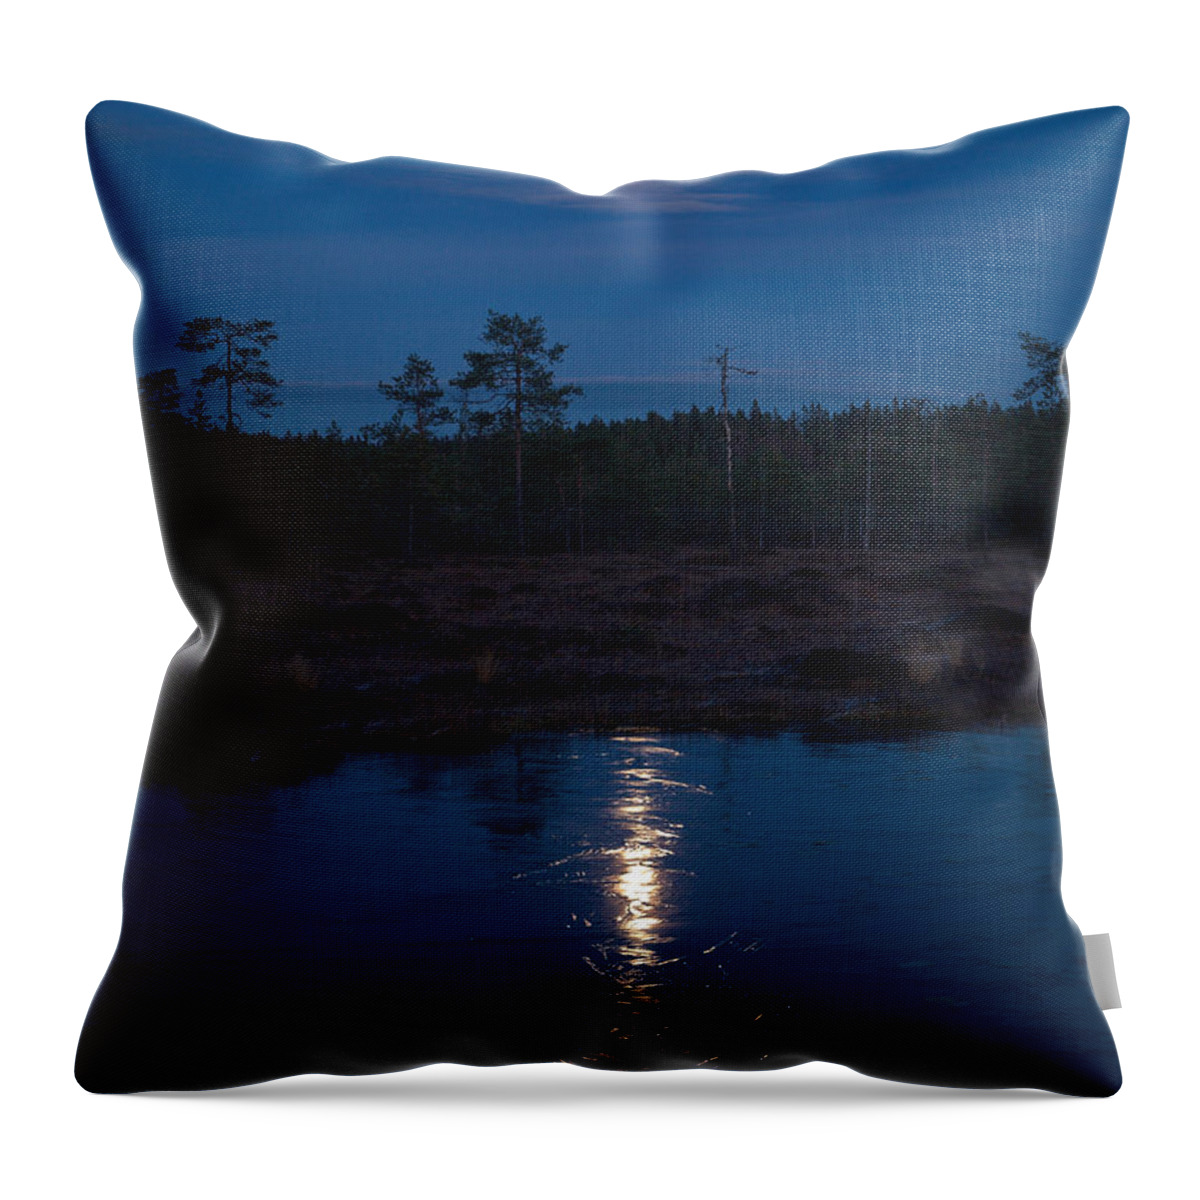 Lehtokukka Throw Pillow featuring the photograph Moon over Wetlands #2 by Jouko Lehto